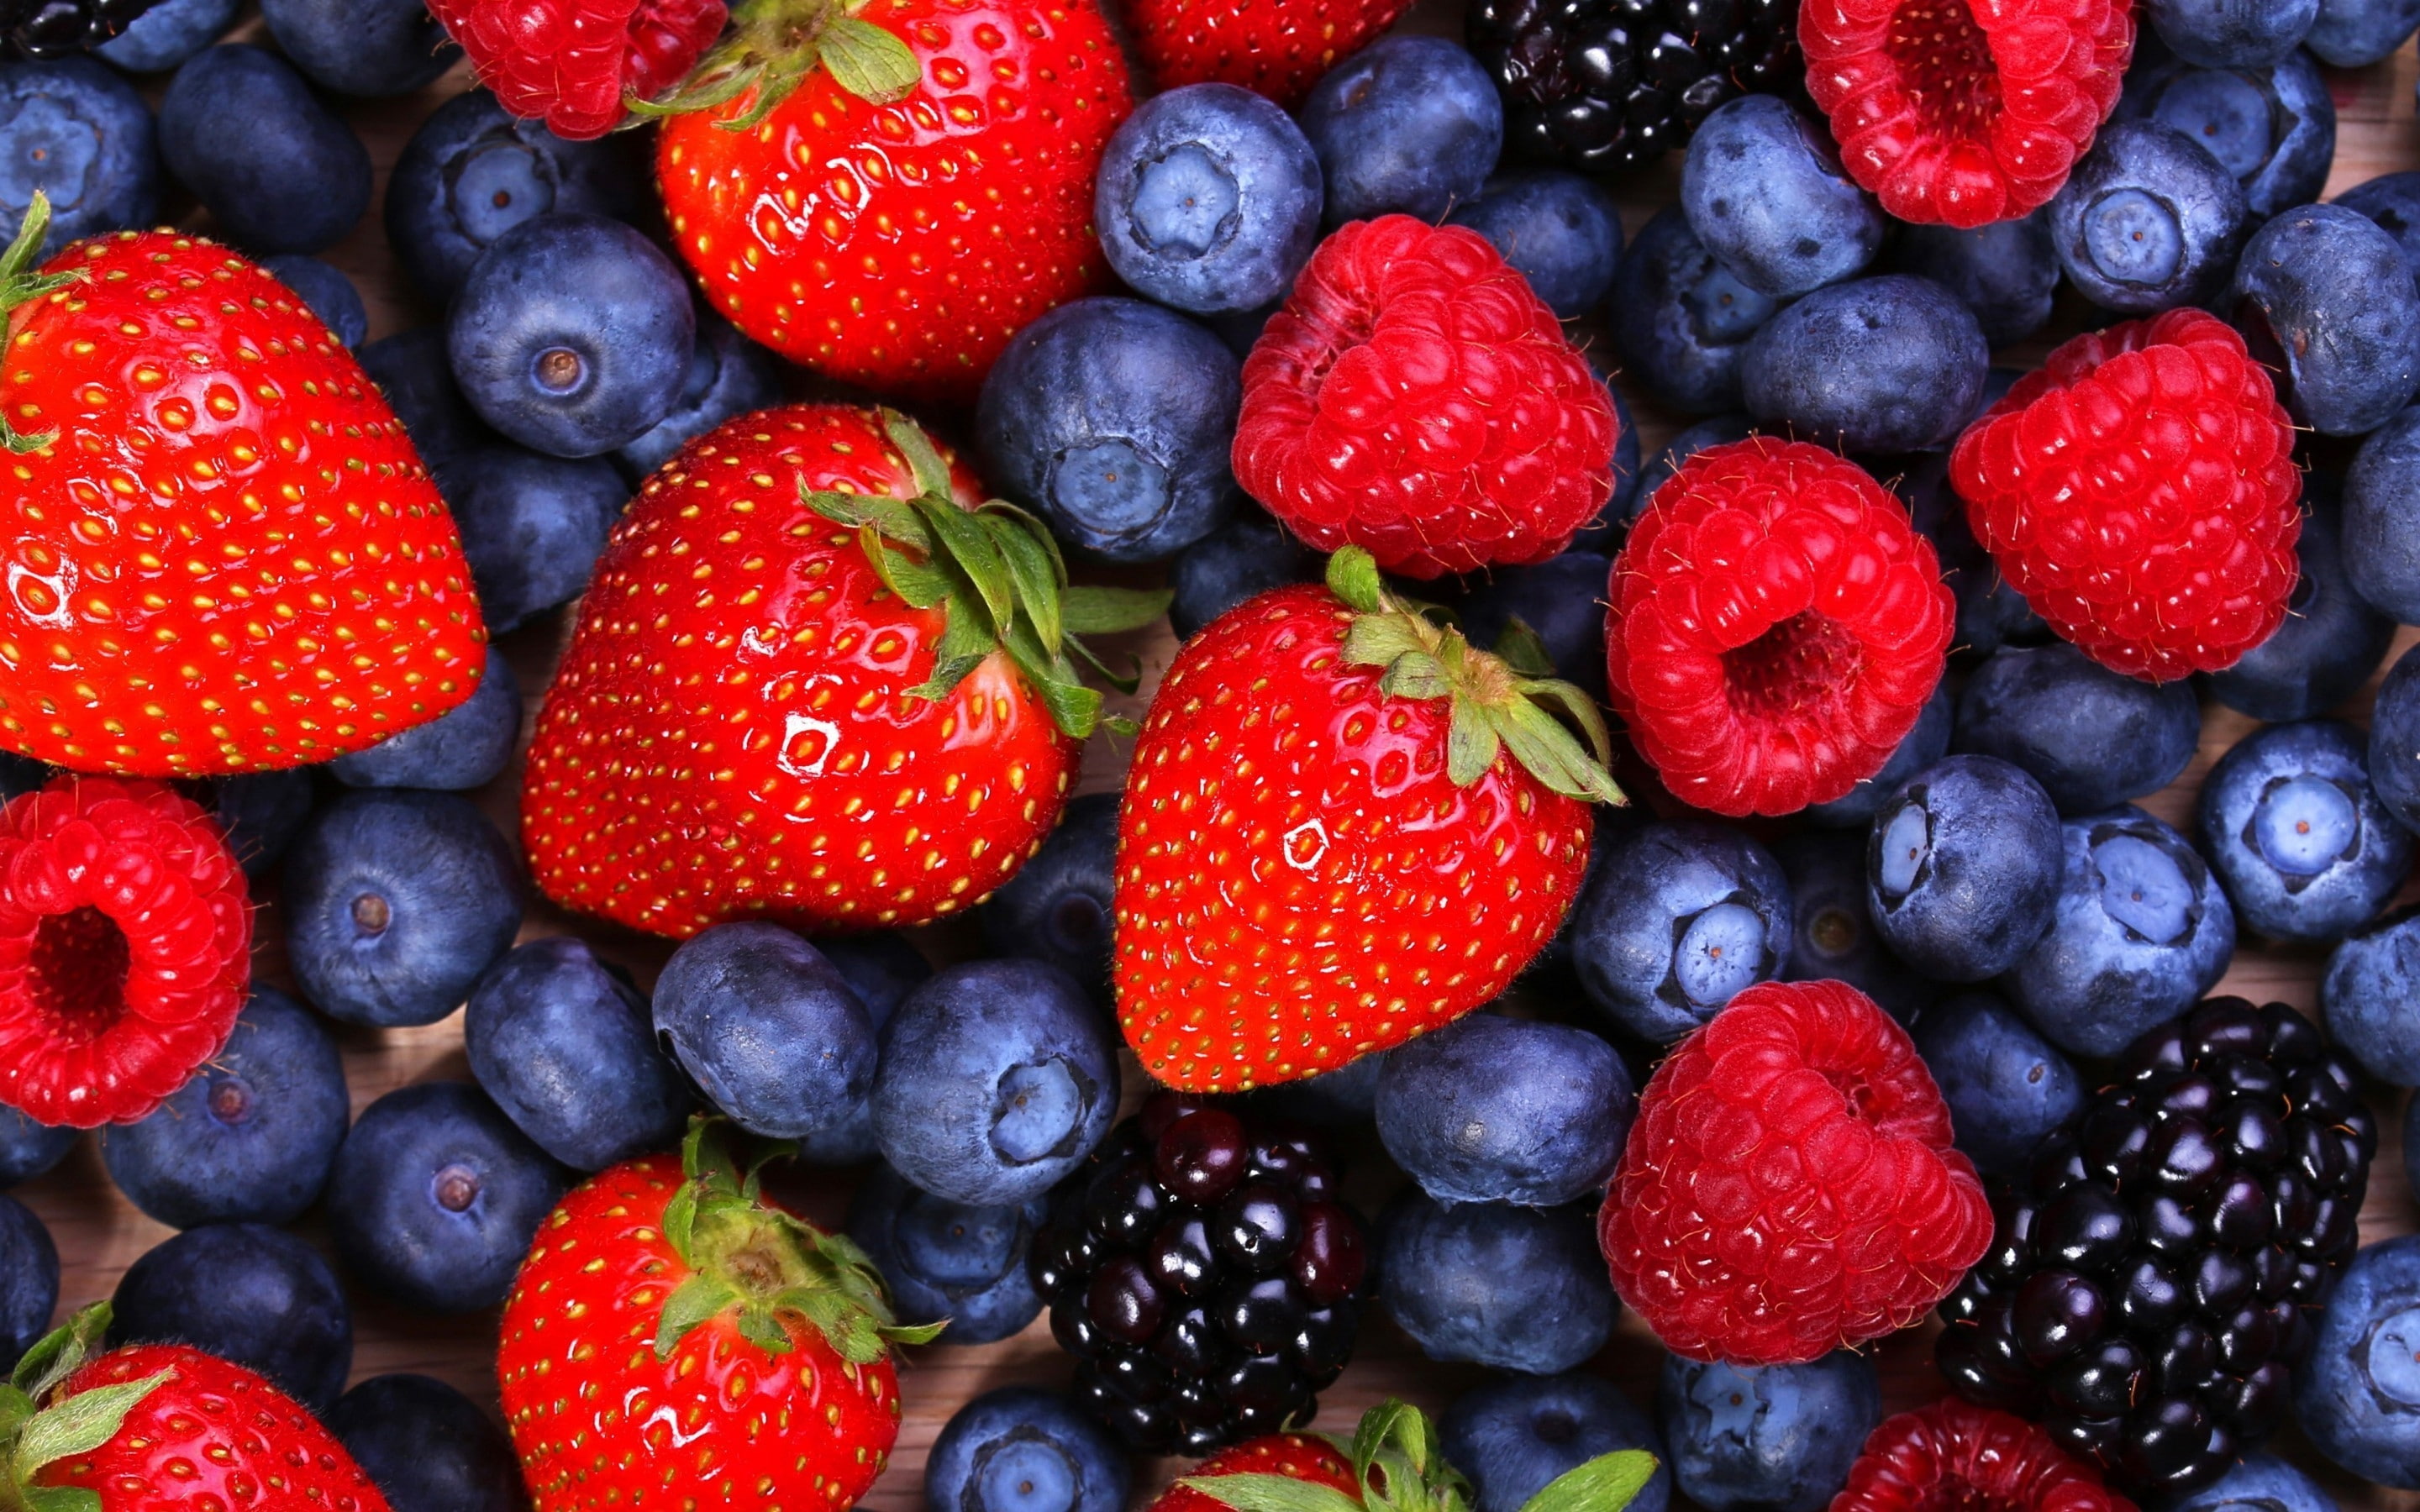 Berries, strawberries, blueberries, raspberries, blackberries